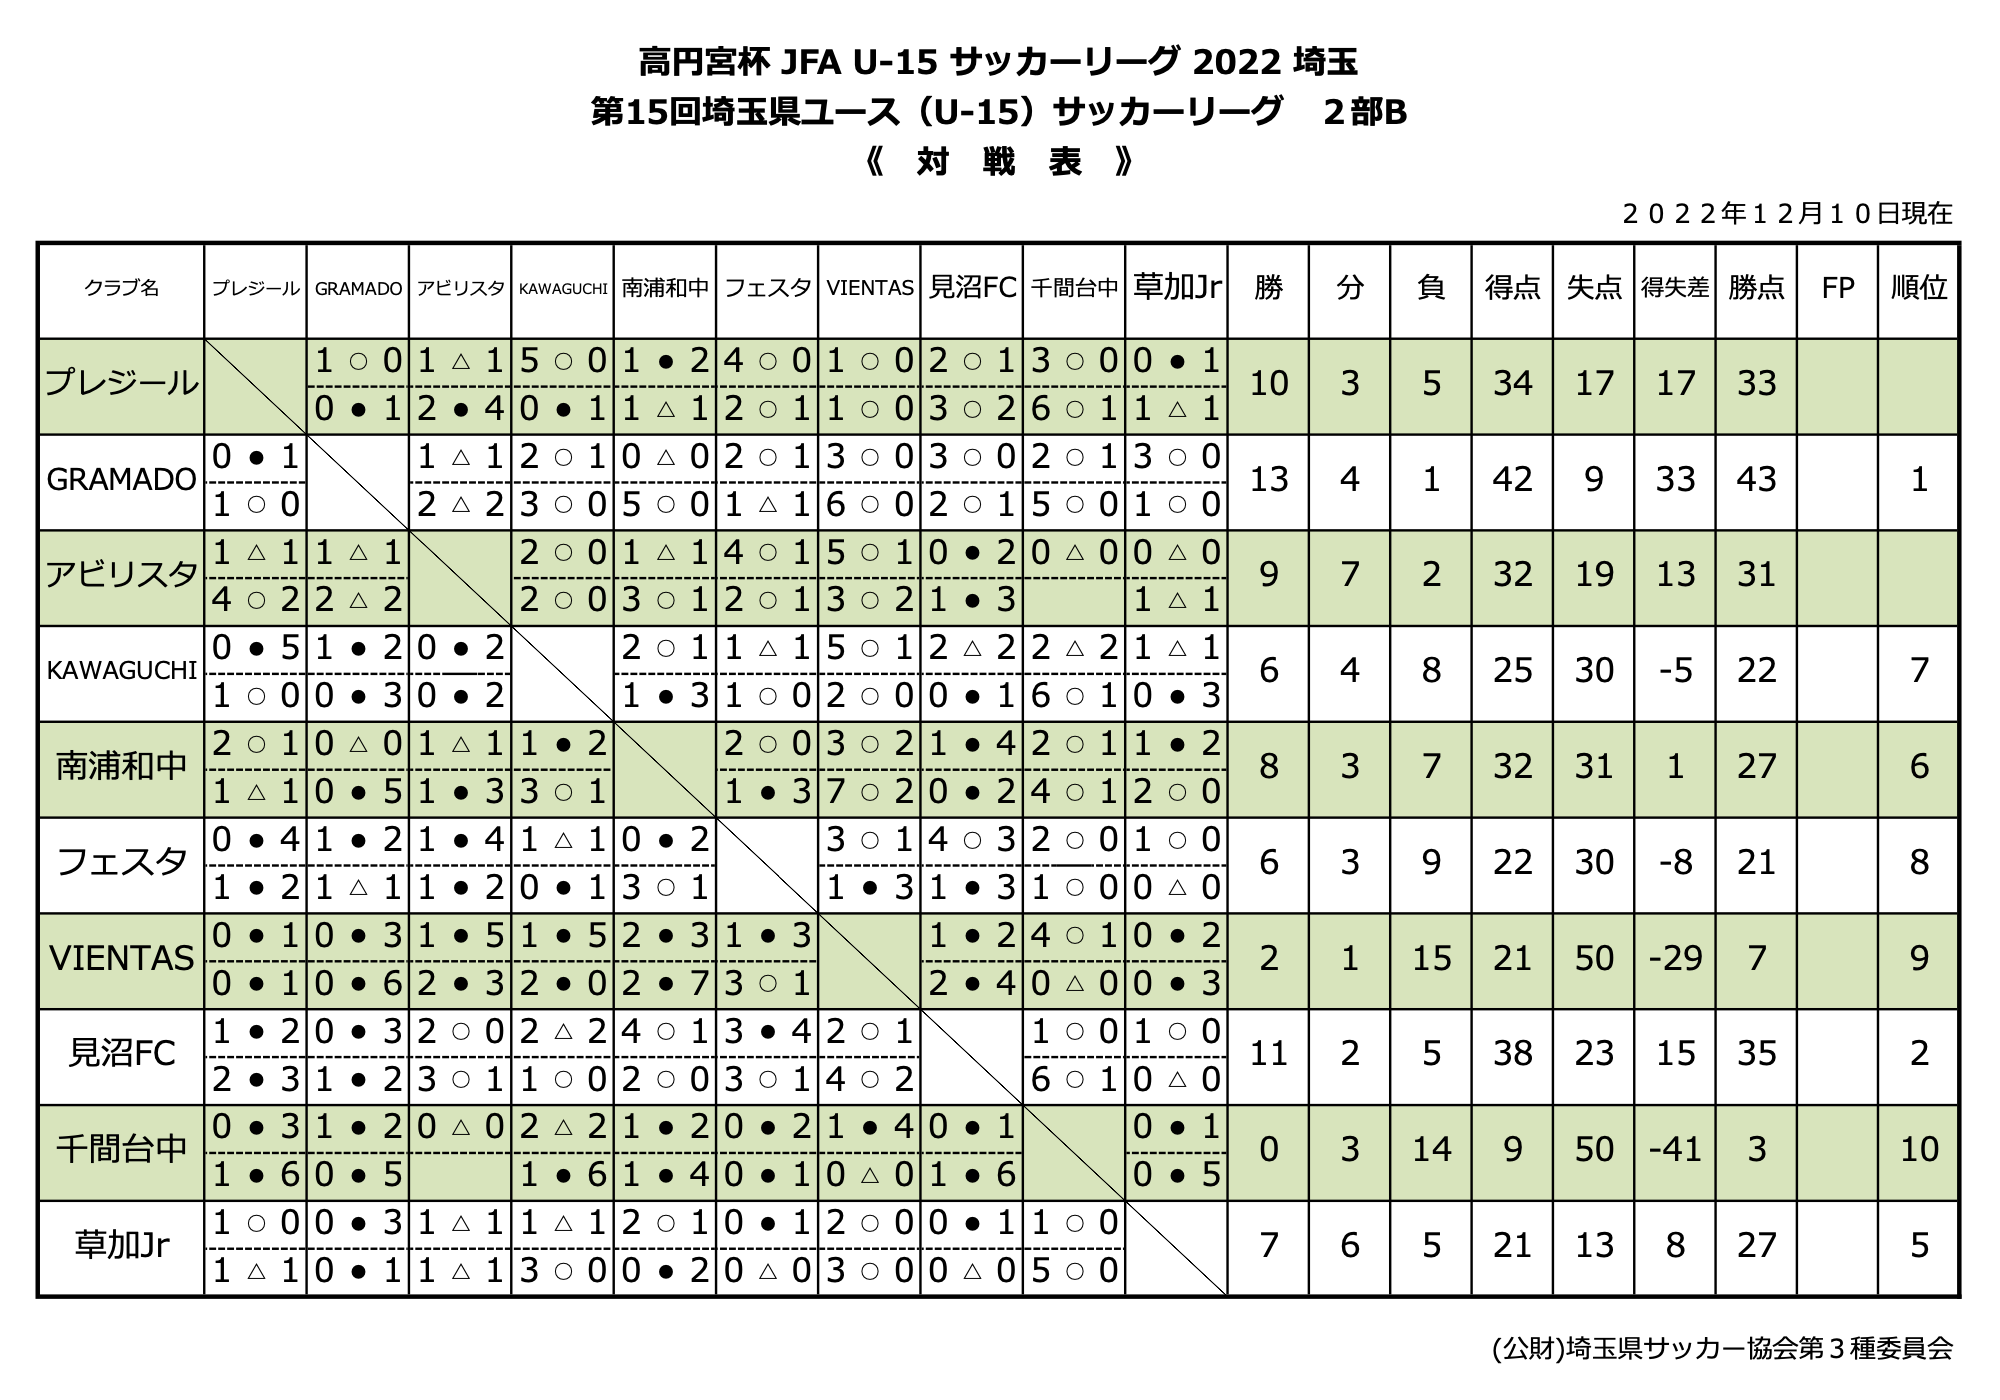 高円宮杯JFAU-15 サッカーリーグ2022年埼玉-第15回埼玉県ユース（U-15）サッカーリーグ2部B